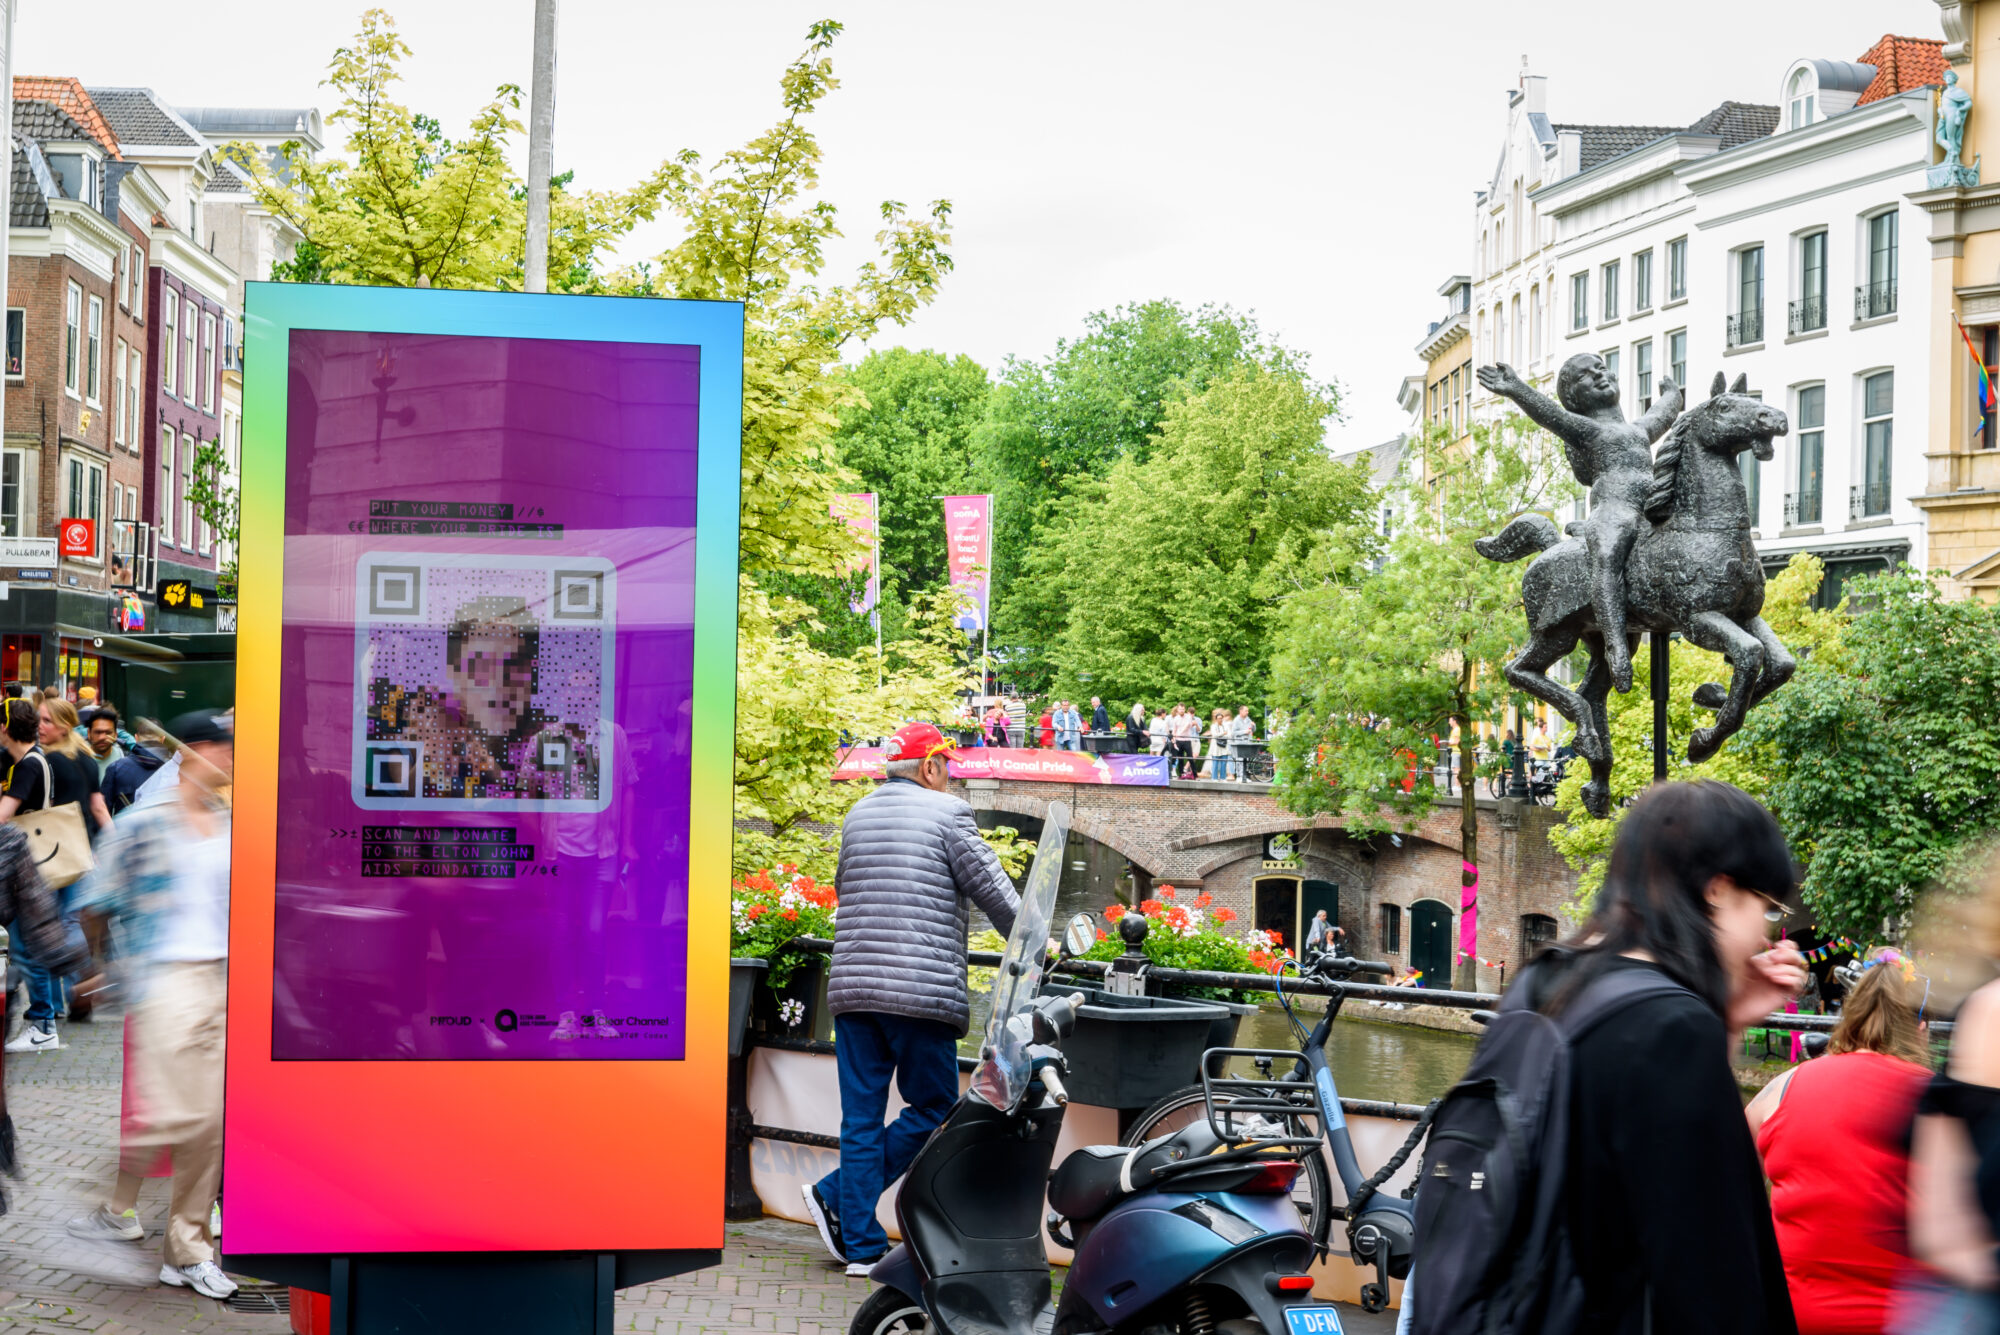 'Put your money where your pride is' billboard in Utrecht